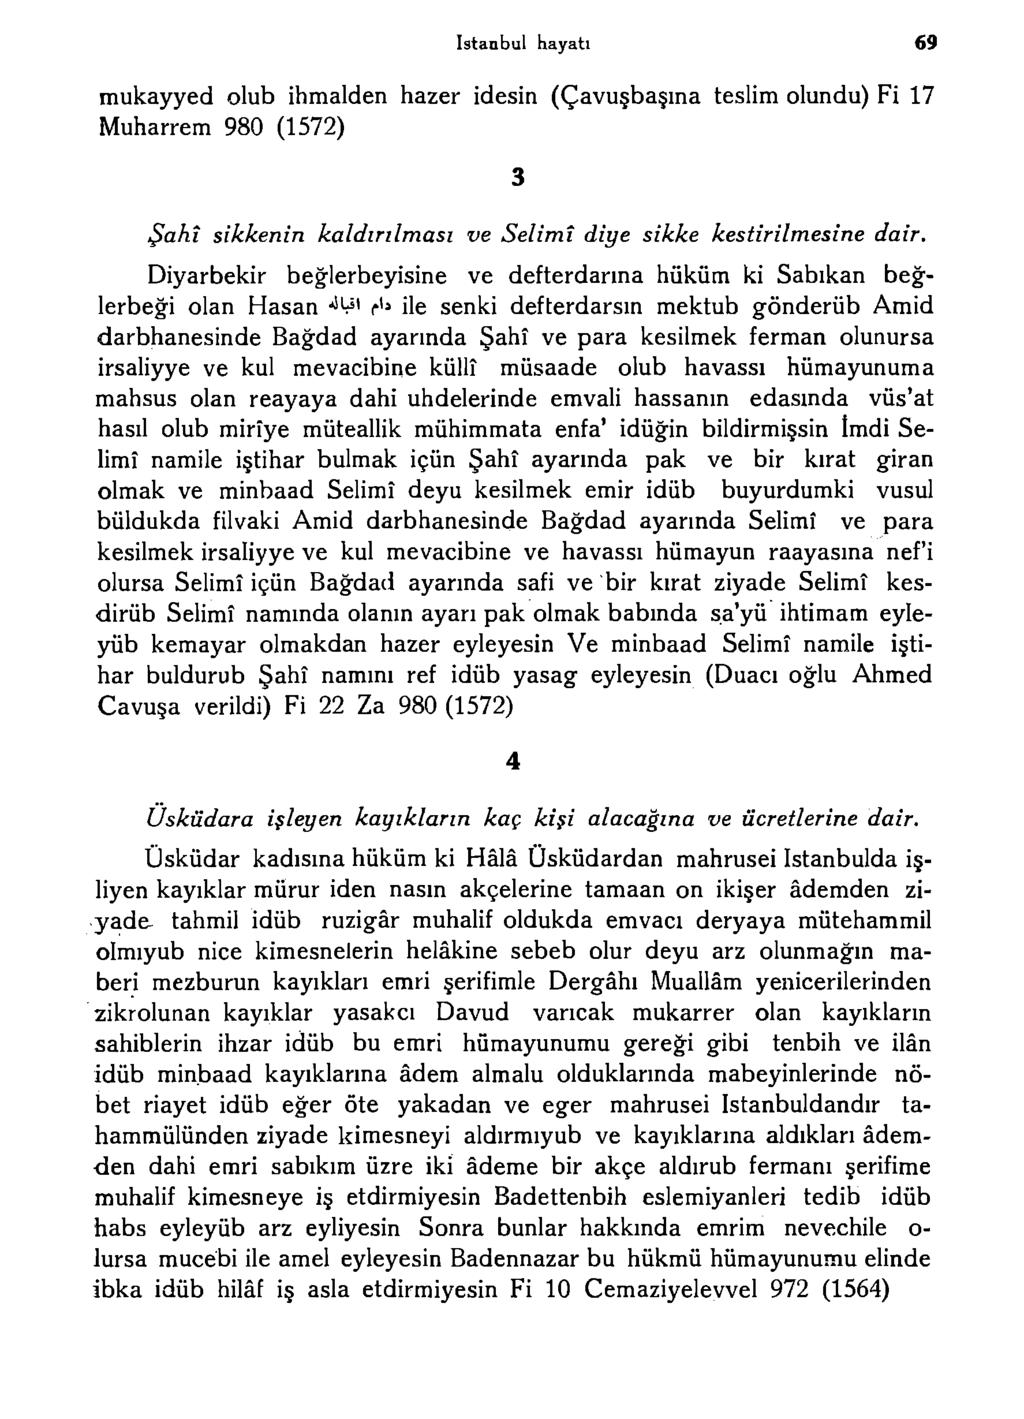 istanbul hayatı 69 mukayyed olub ihmalden hazer idesin (Çavuşbaşma teslim olundu) Fi 17 Muharrem 980 (1572) Şahî sikkenin kaldırılması ve Selimî diye sikke kestirilmesine dair.